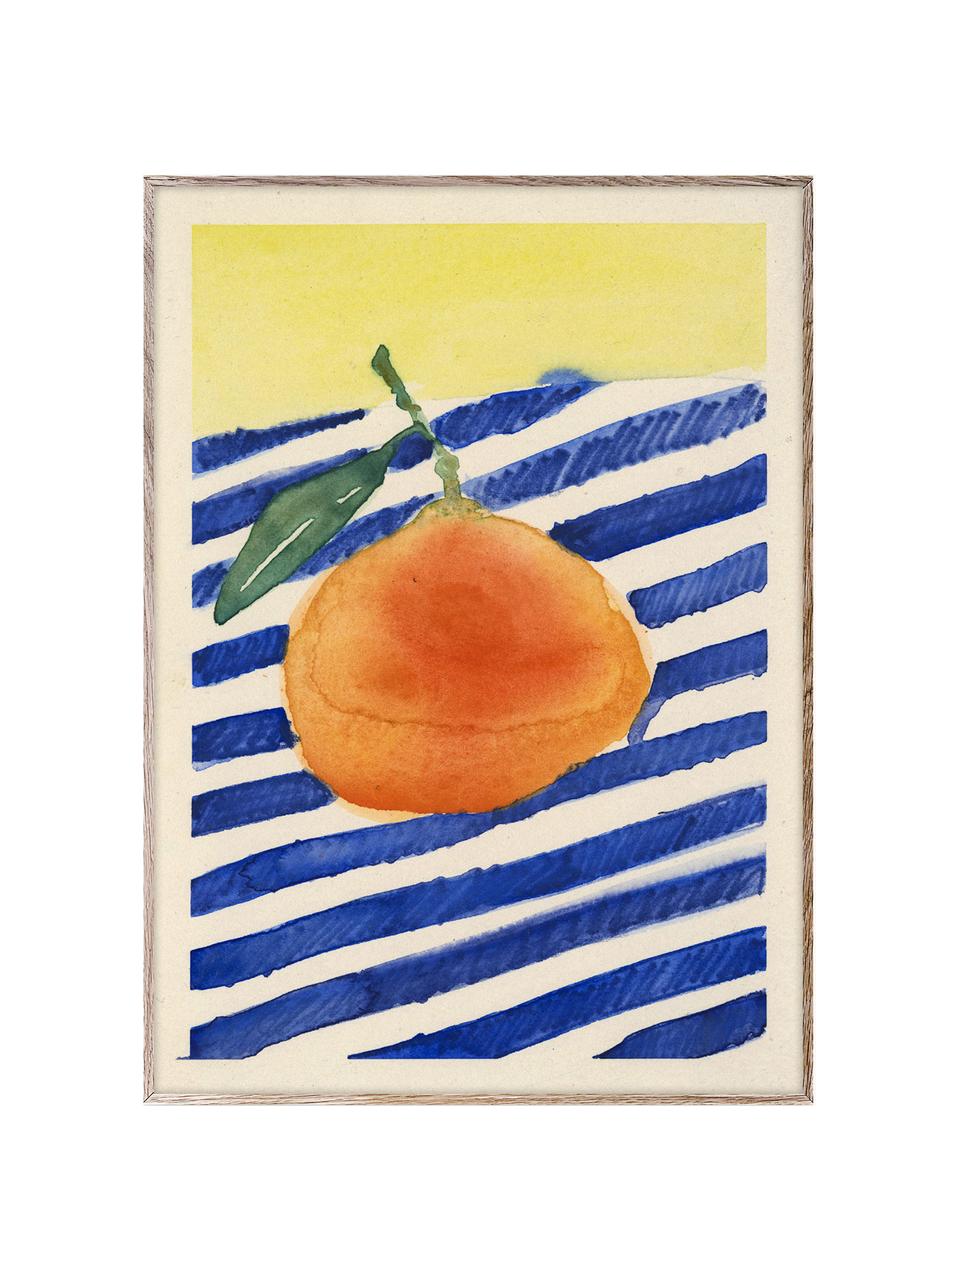 Póster Orange, Papel Hahnemühle mate de 210 g, impresión digital a 10 colores resistentes a los rayos UV, Naranja, azul oscuro, amarillo claro, An 30 x Al 40 cm